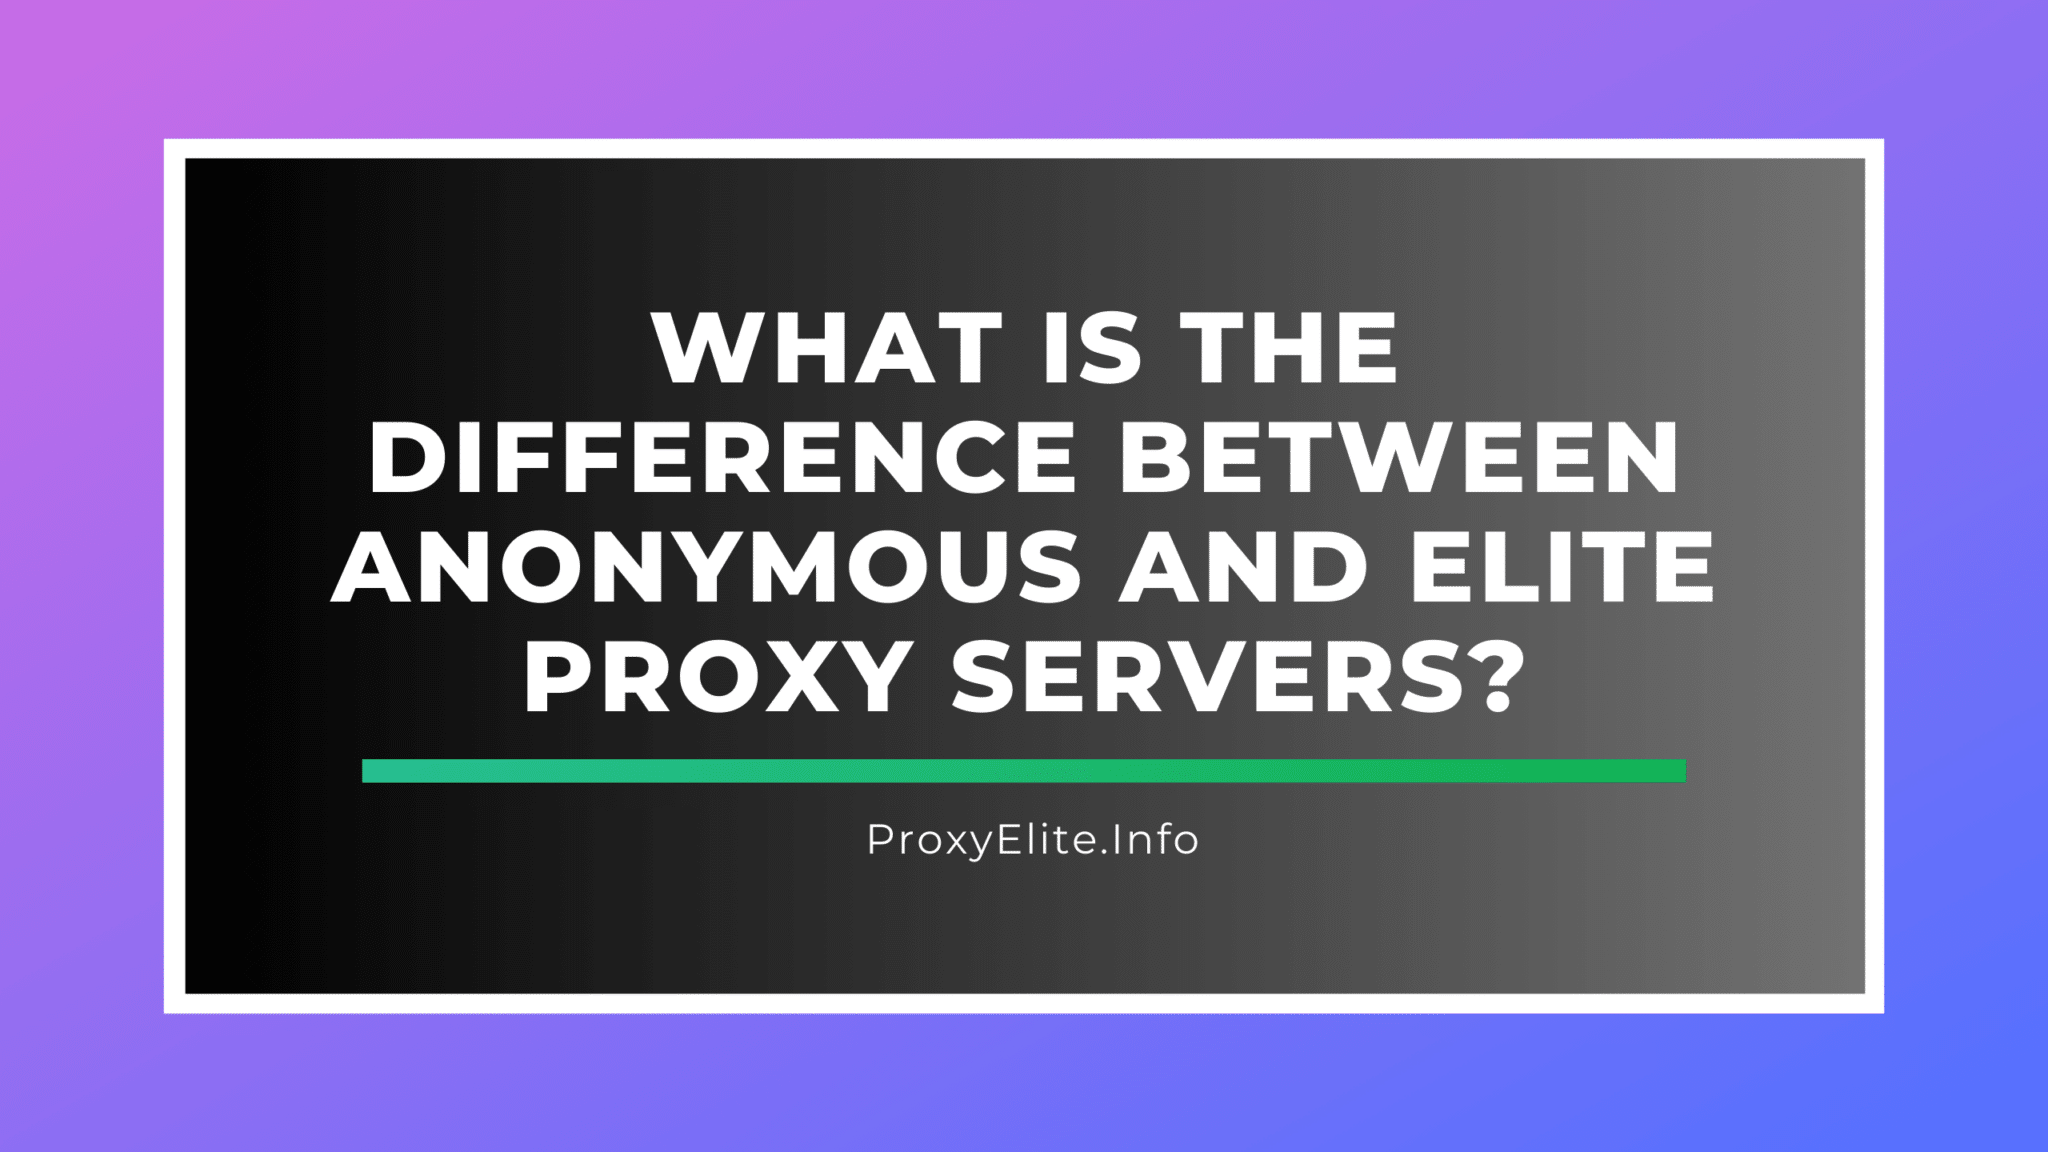 Qual é a diferença entre servidores proxy anônimos e elite?